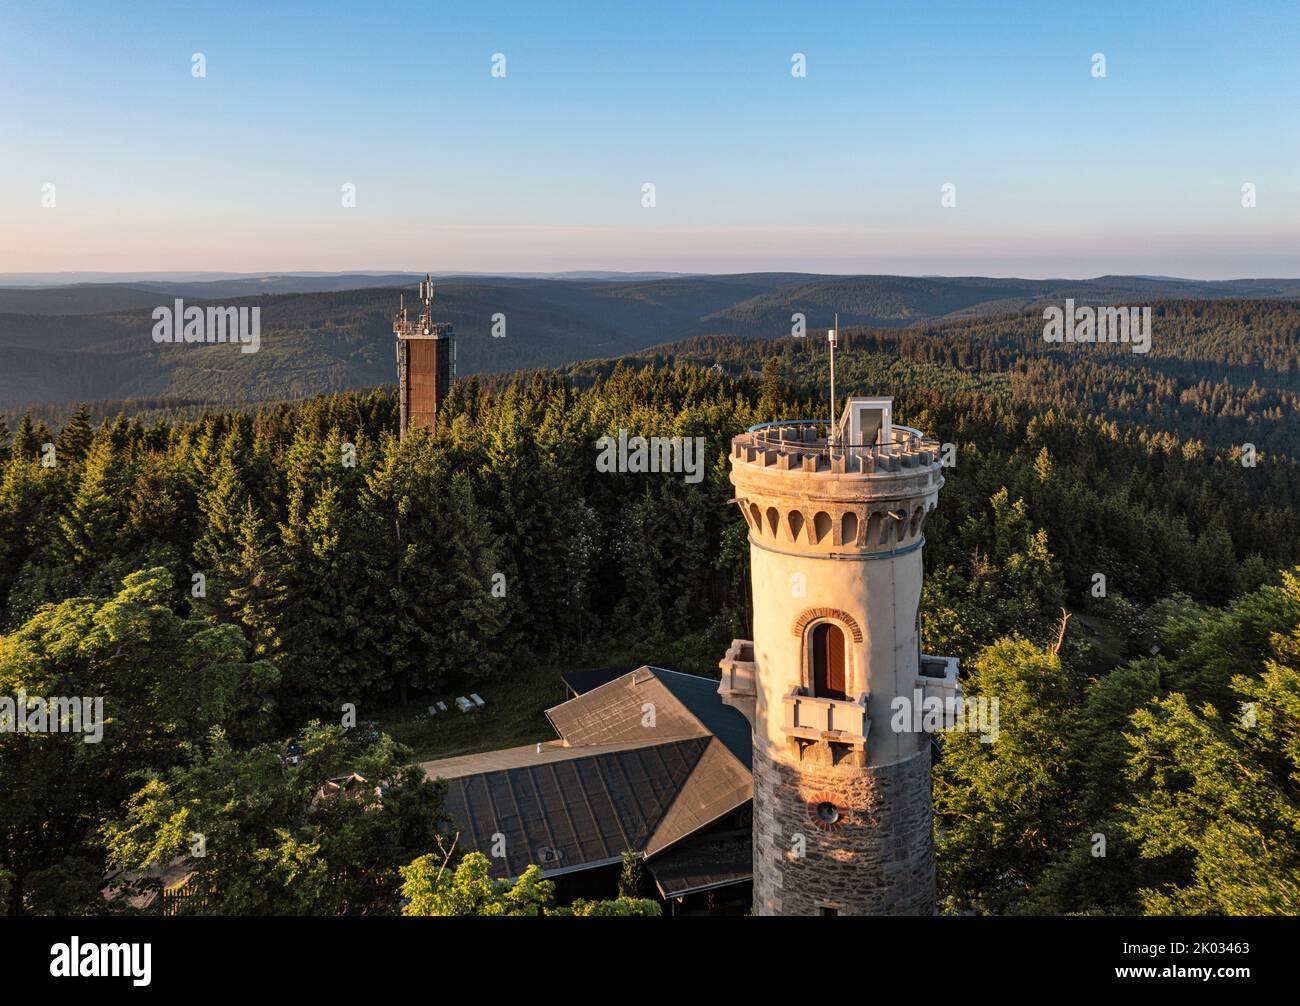 Deutschland, Thüringen, Ilmenau, Kickelhahn, Aussichtsturm, Telekom Turm, Wald, Berge, Übersicht Stockfoto